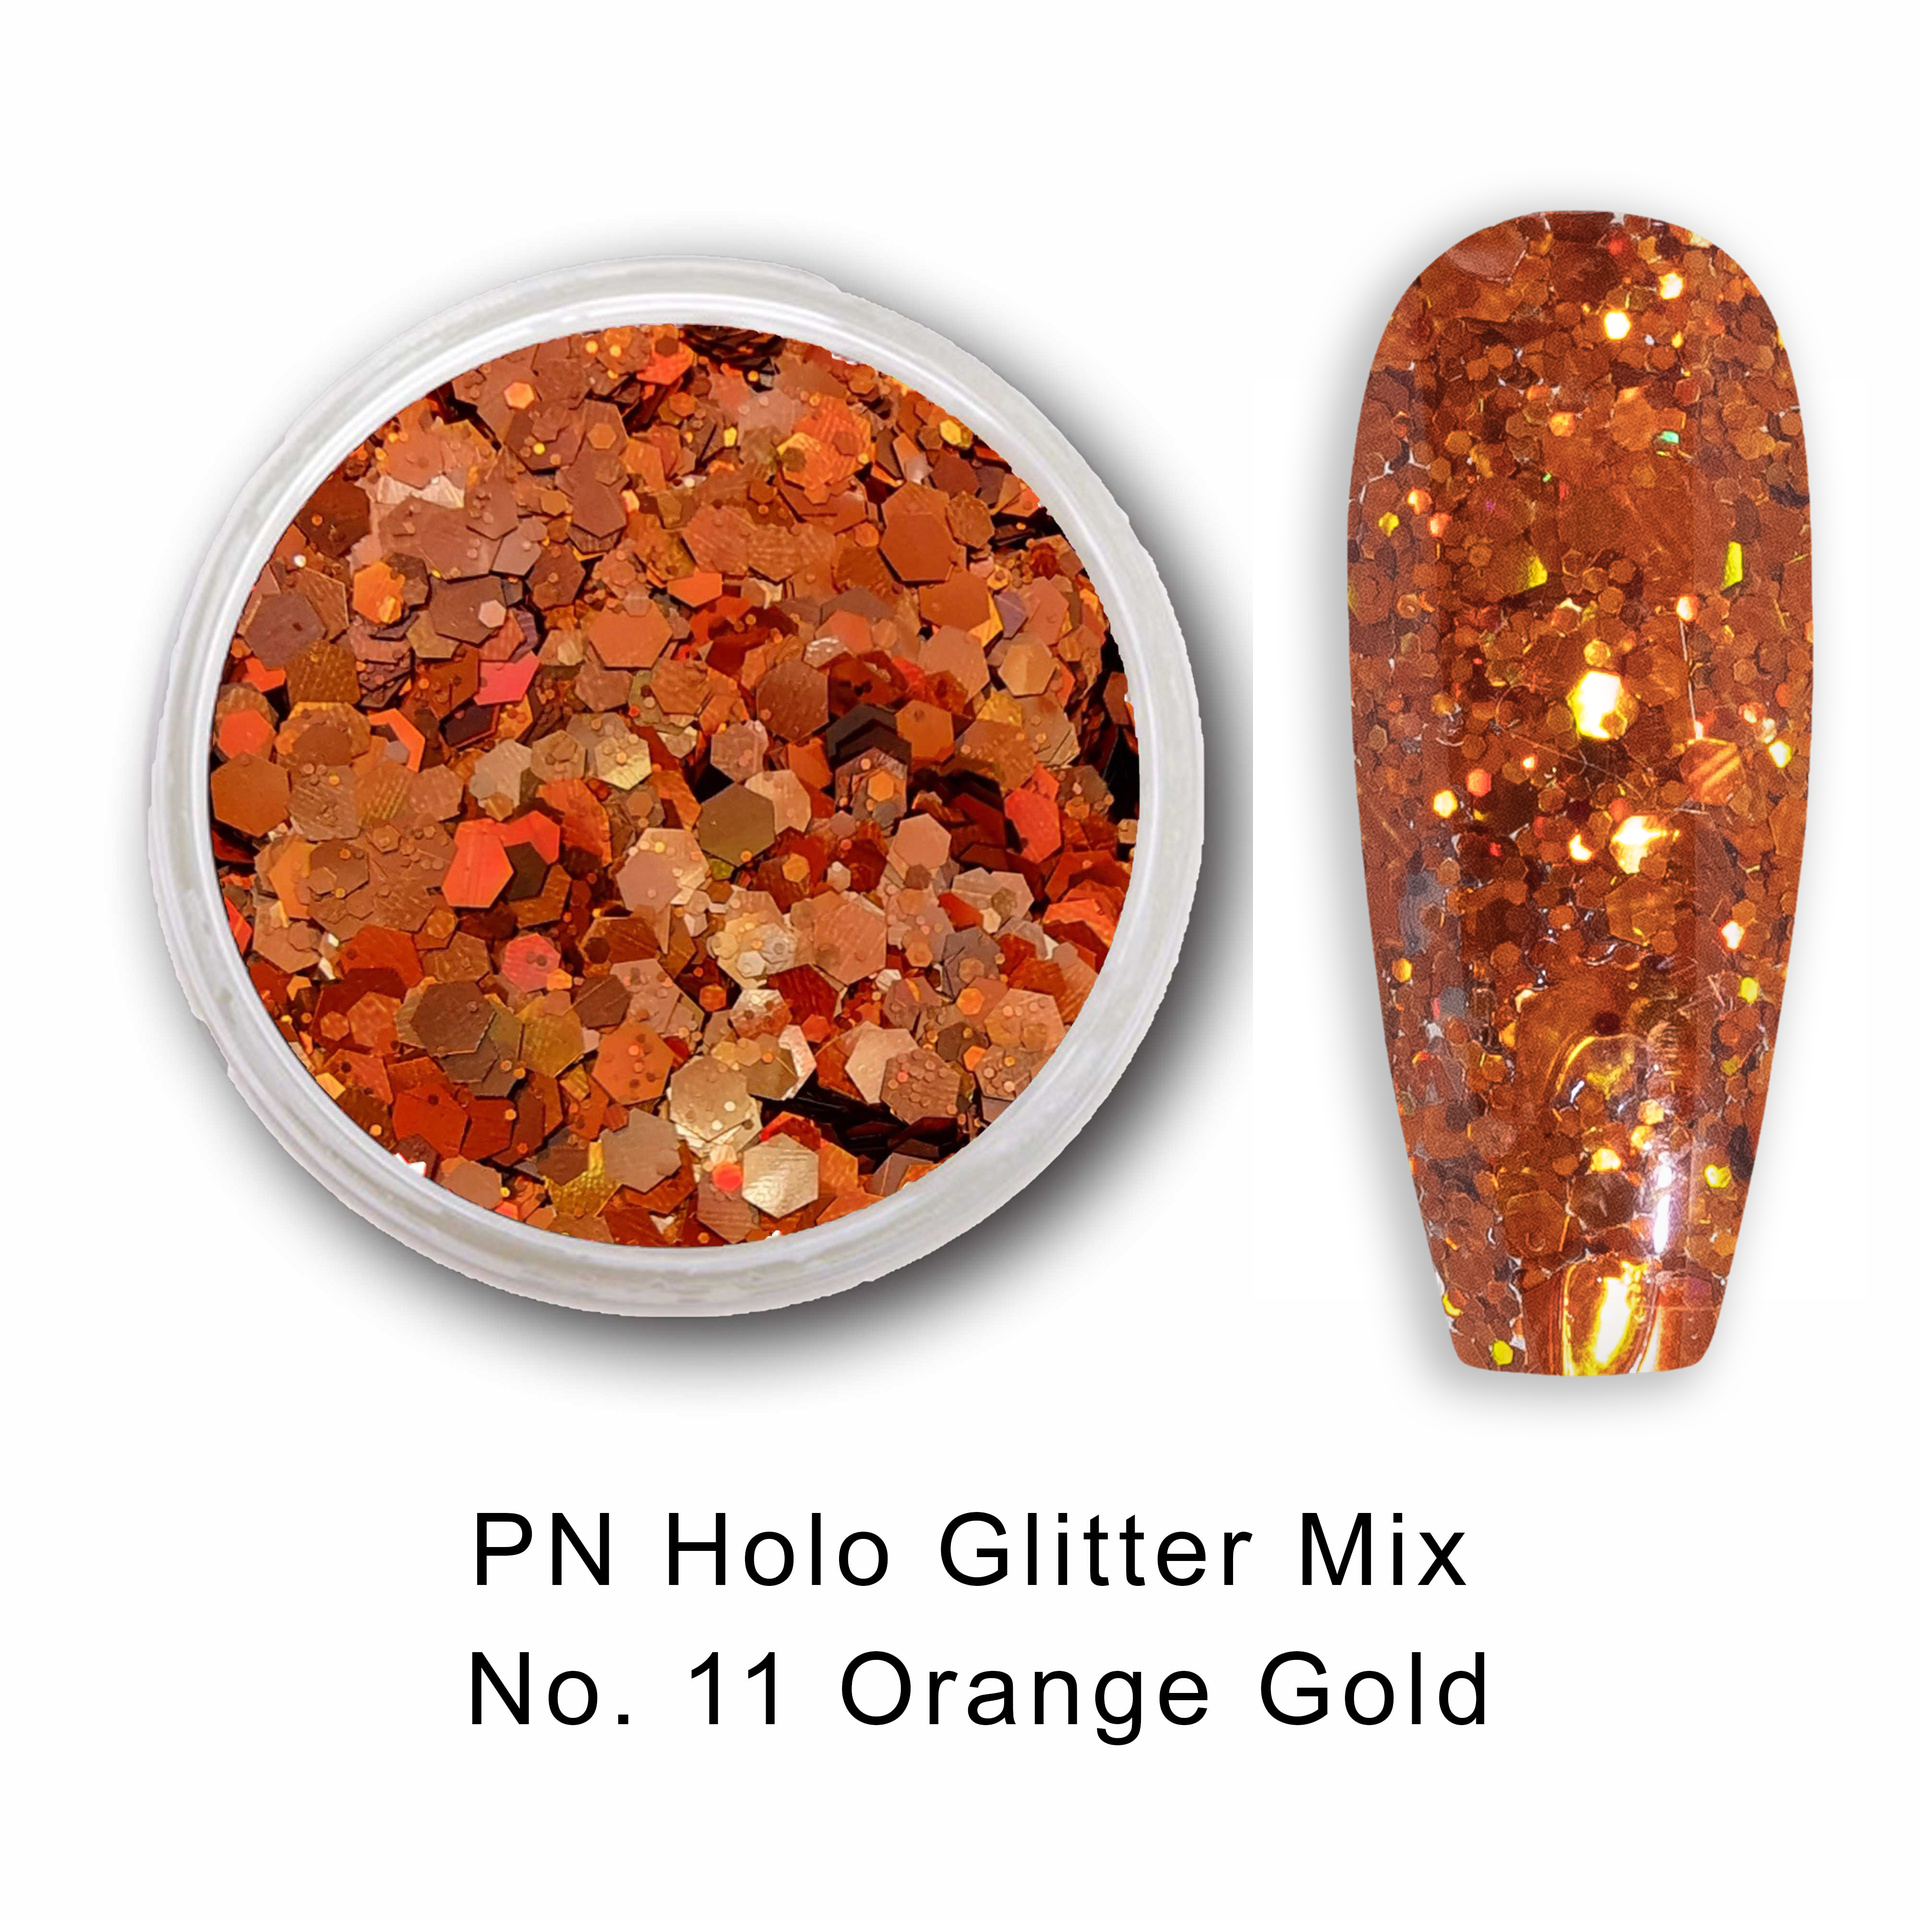 PN Holo glitter mix No.11 Orange Gold